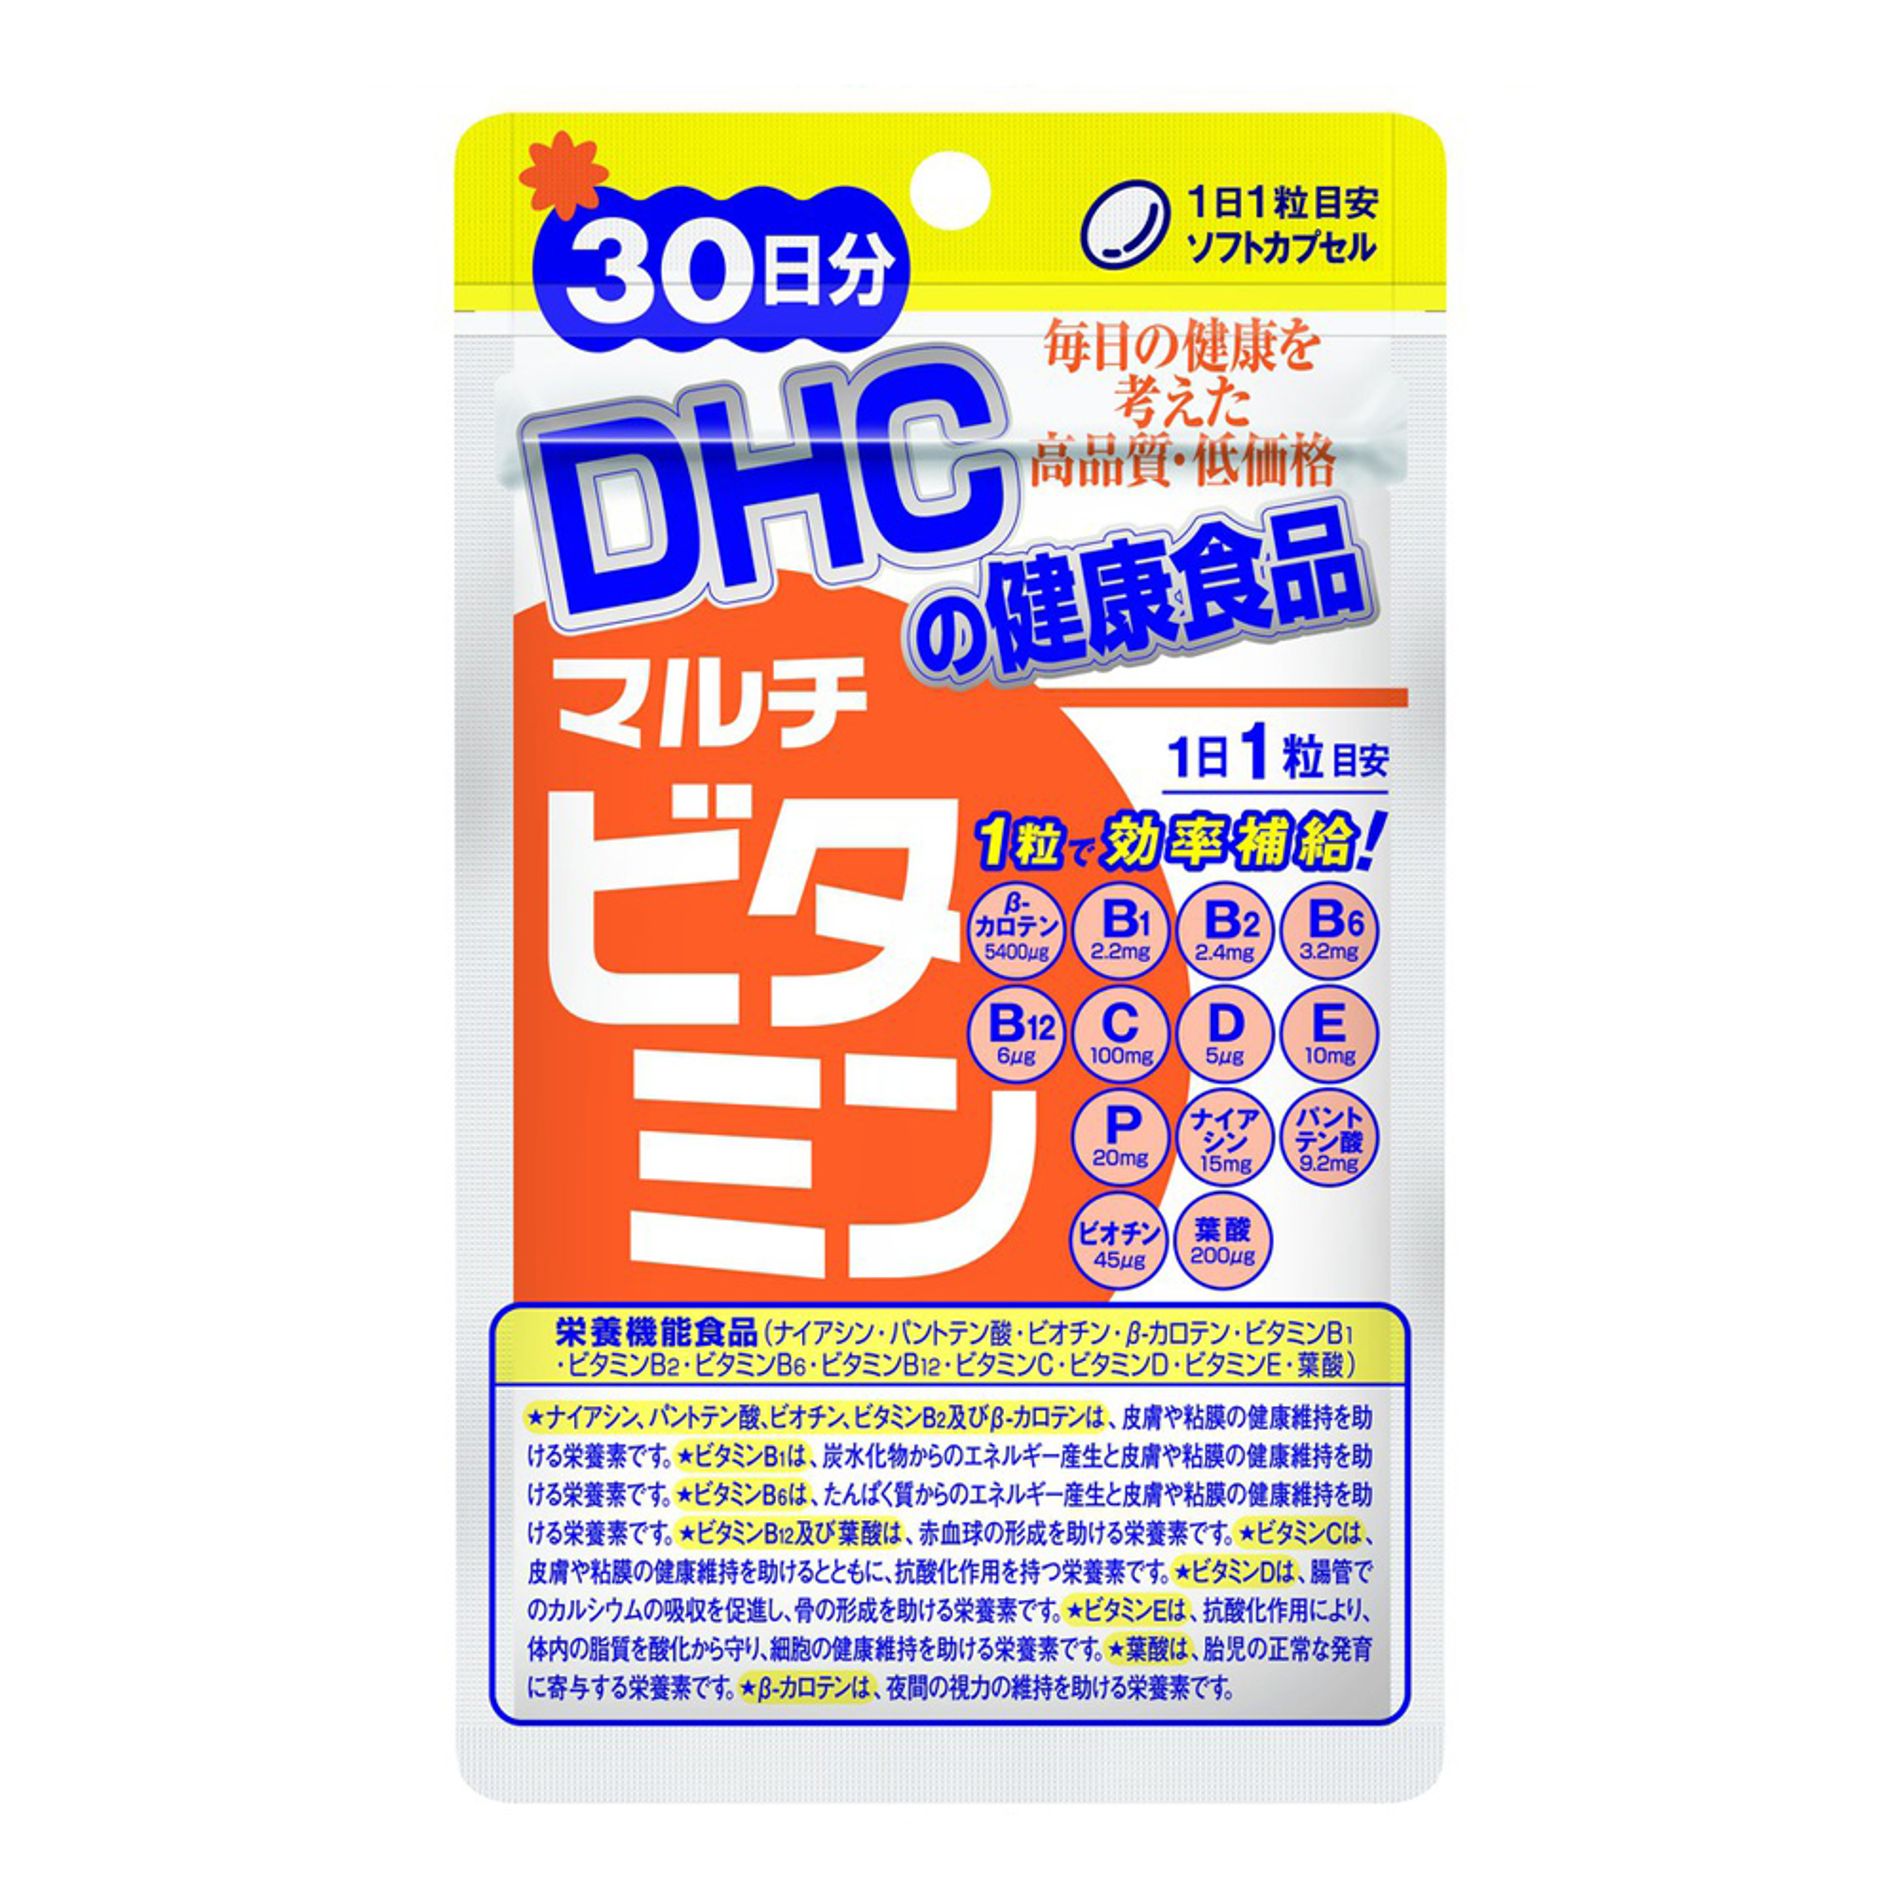 vien-uong-vitamin-tong-hop-nhat-ban-dhc-multi-vitamins-5